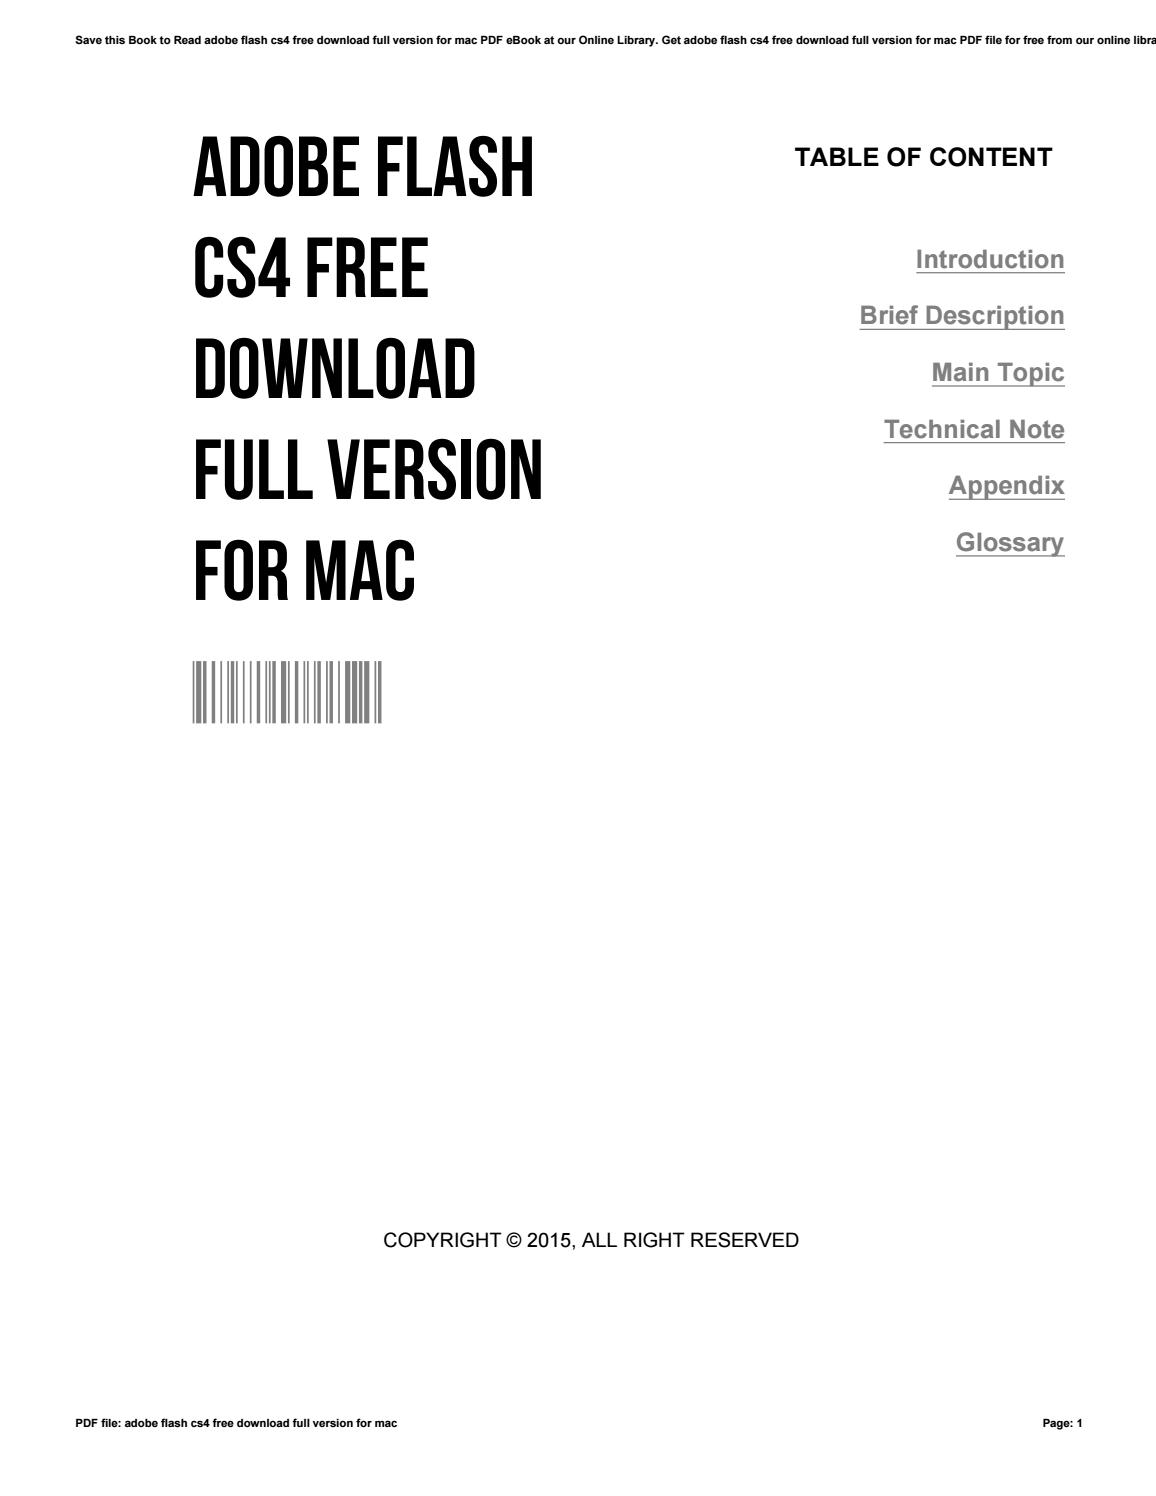 Adobe flash cs5 download free